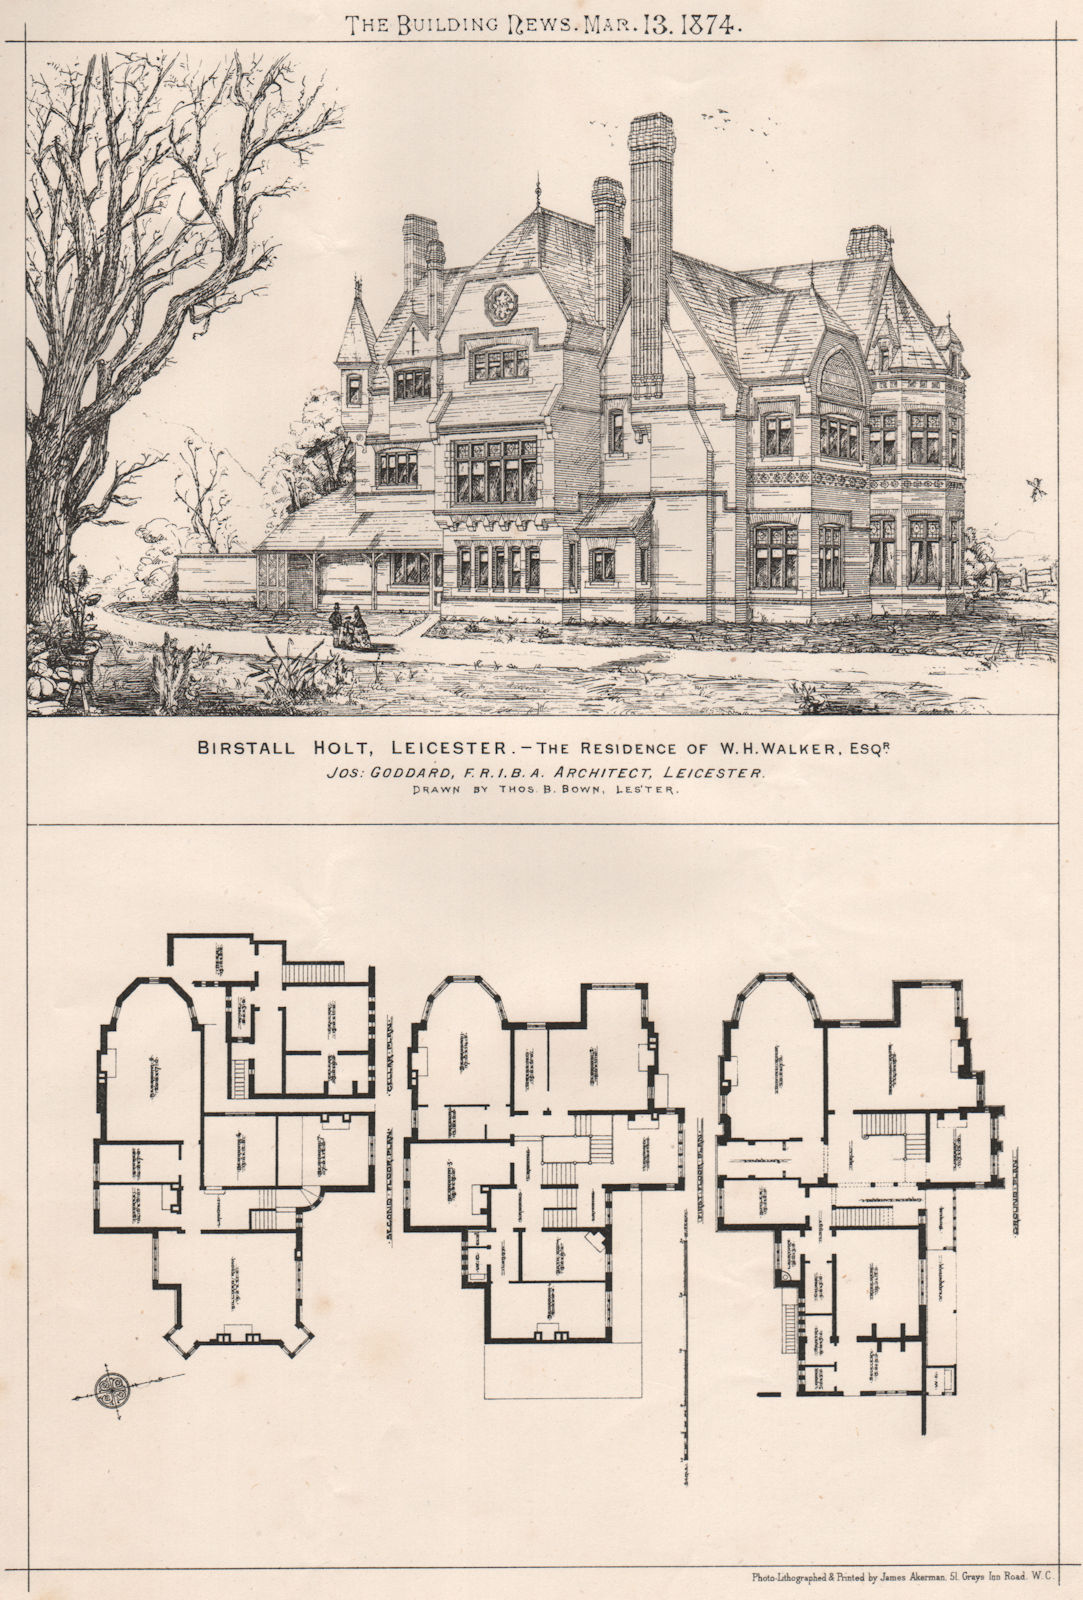 Bristall Holt, Leicester. W.H. Walker, Esqr; Jos Goddard, Architect 1874 print